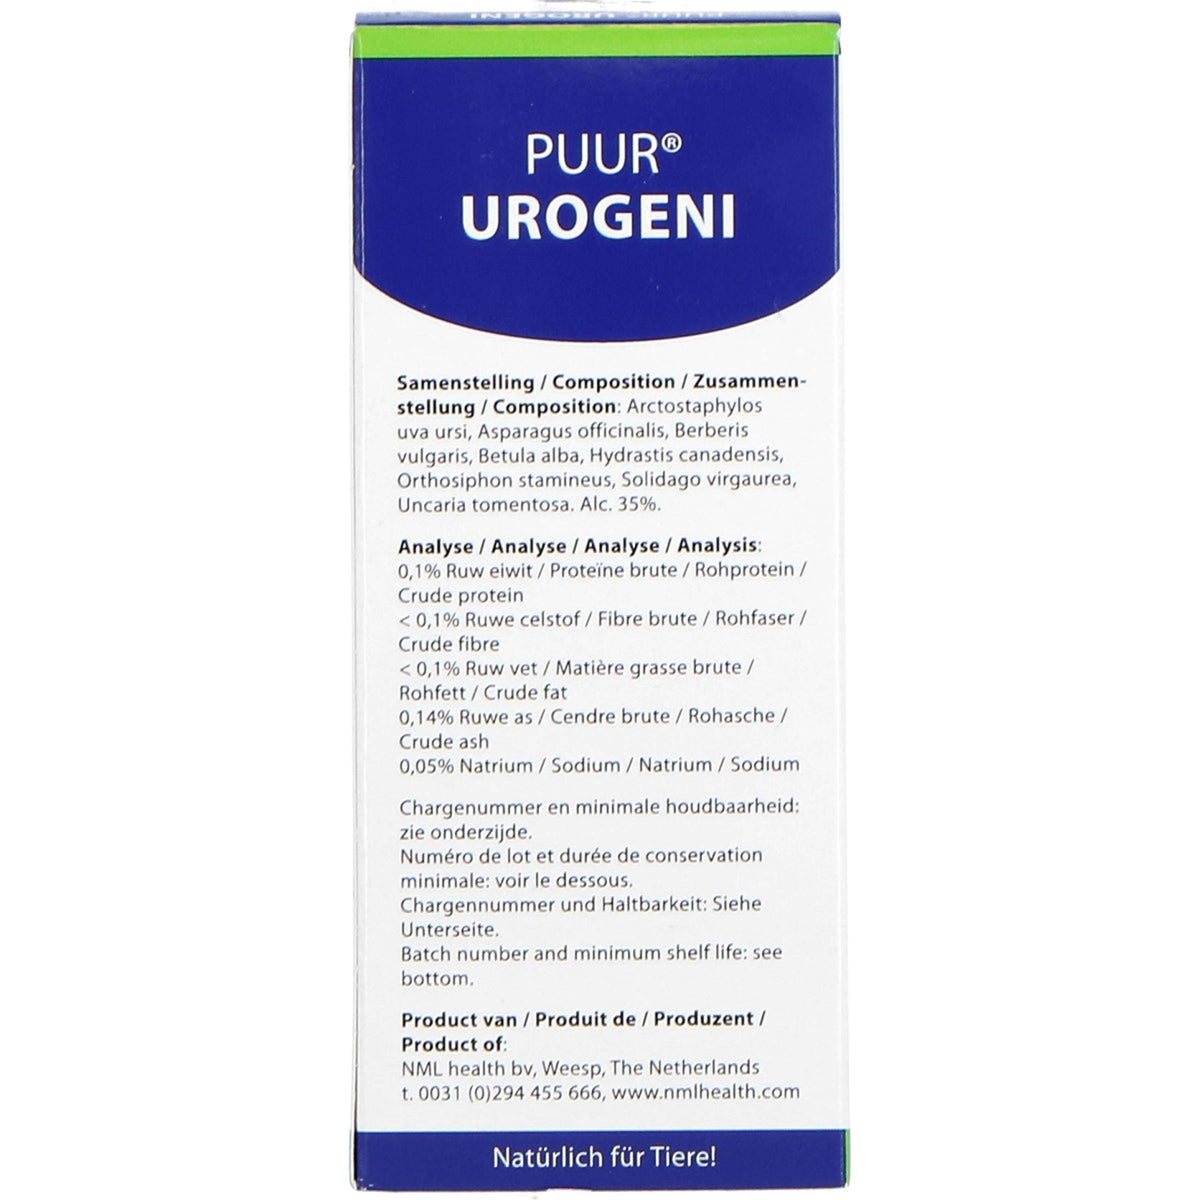 PUUR Urogeni Blase und Nieren Pferd/Pony